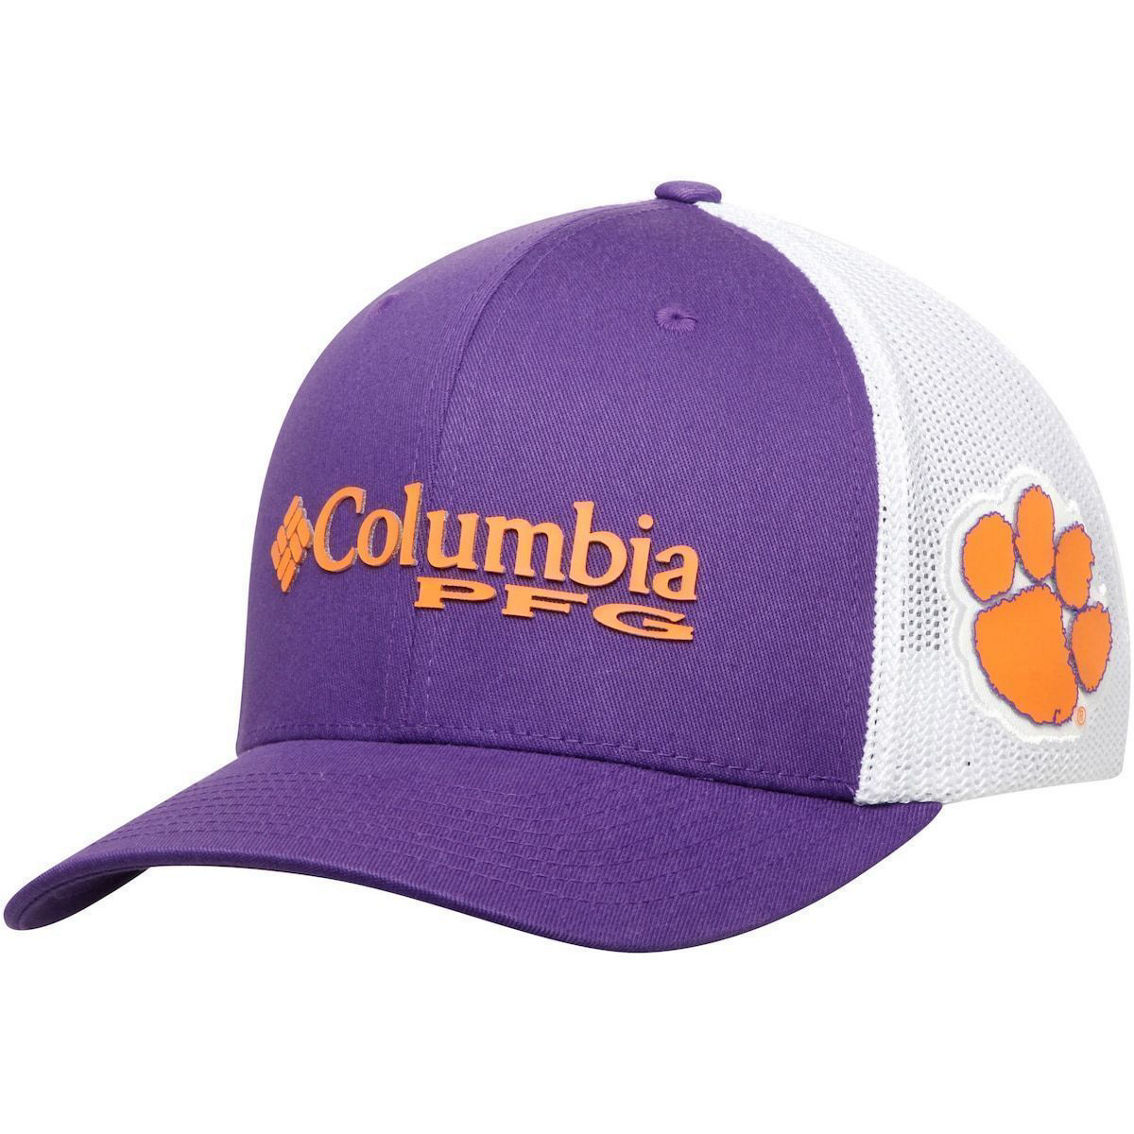 Men's Columbia Purple Clemson Tigers Collegiate PFG Flex Hat - Image 2 of 4